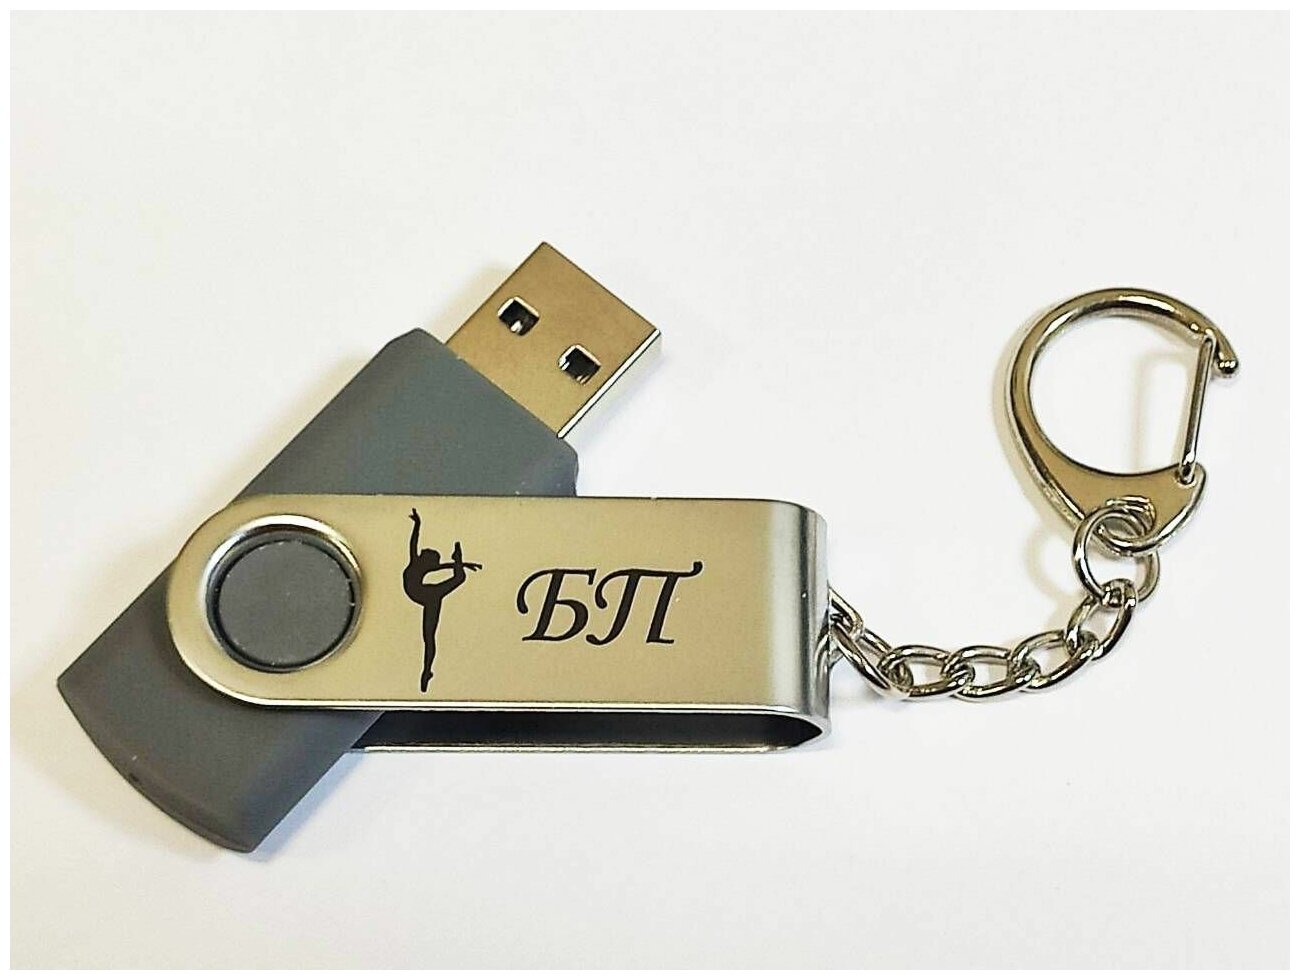 Подарочный USB-накопитель гимнастика БП (без предмета) сувенирная флешка серая 4GB